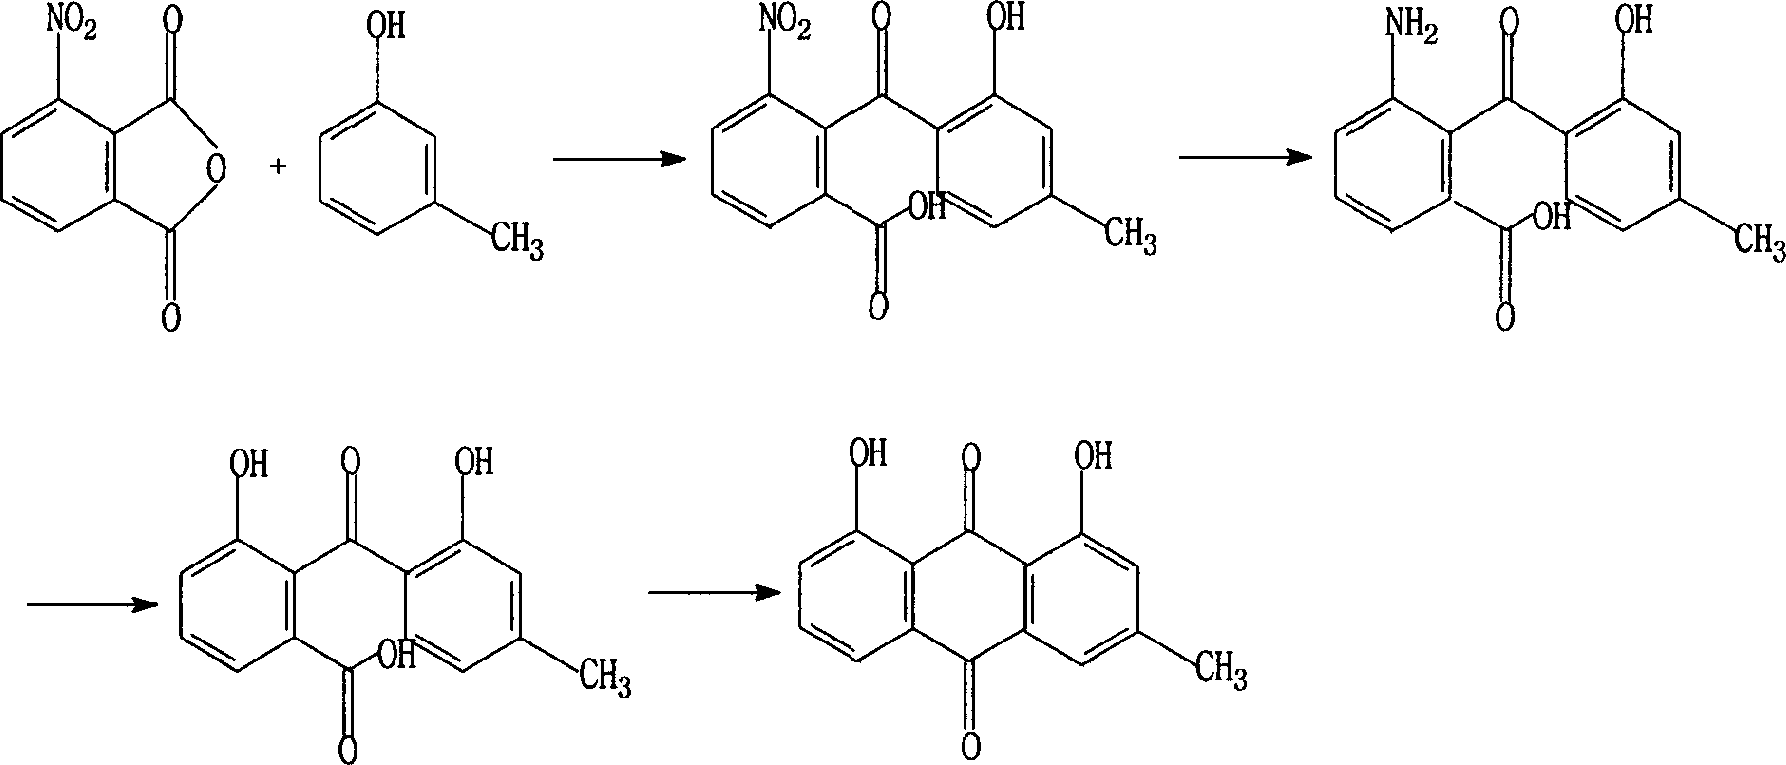 Synthesis method of rhein and diacerein